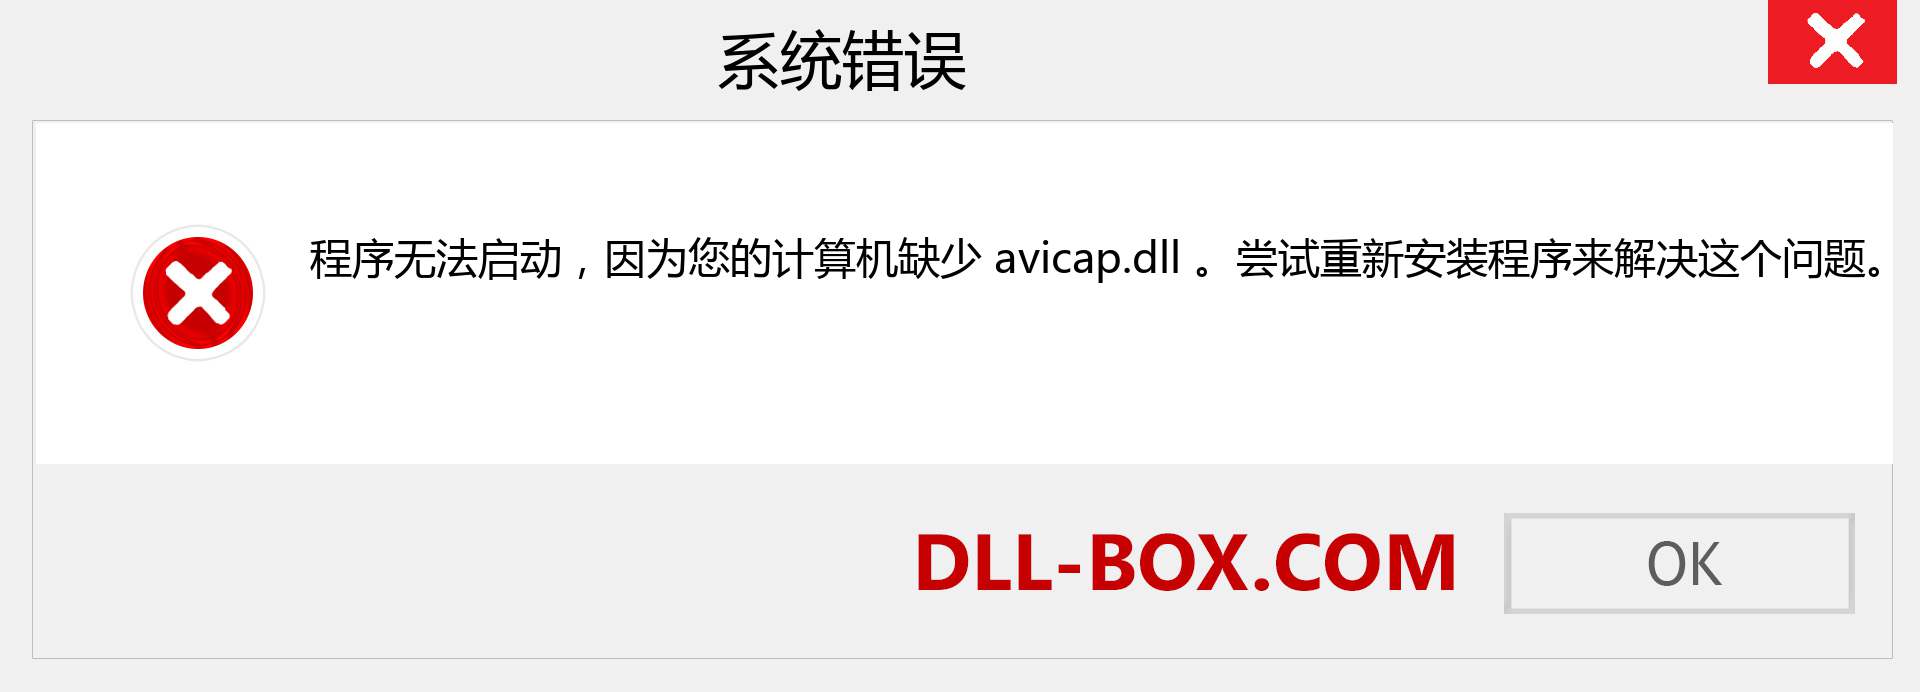 avicap.dll 文件丢失？。 适用于 Windows 7、8、10 的下载 - 修复 Windows、照片、图像上的 avicap dll 丢失错误